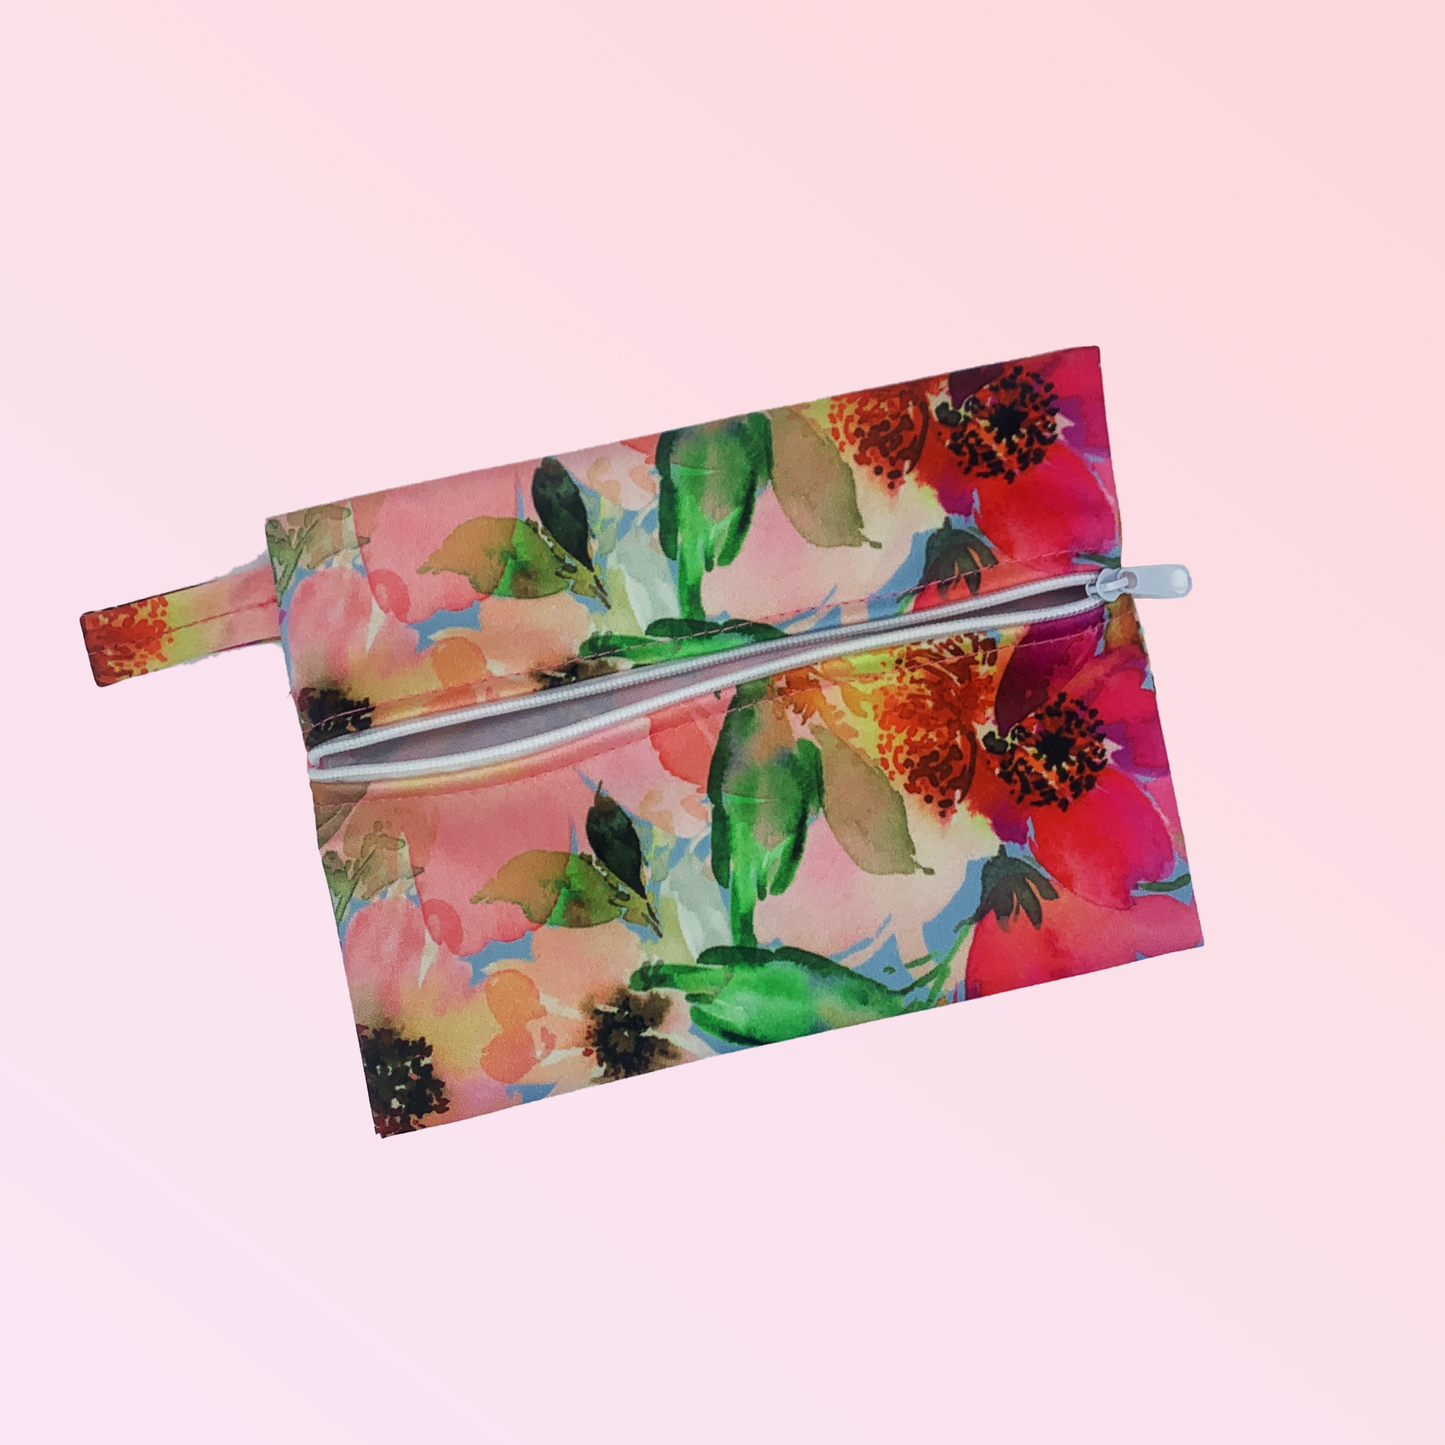  Pochette imperméable de transport côté tirette ouverte design rose fleuris pour ranger tes serviettes hygiéniques, cups ou culottes menstruelles - Pussyfy